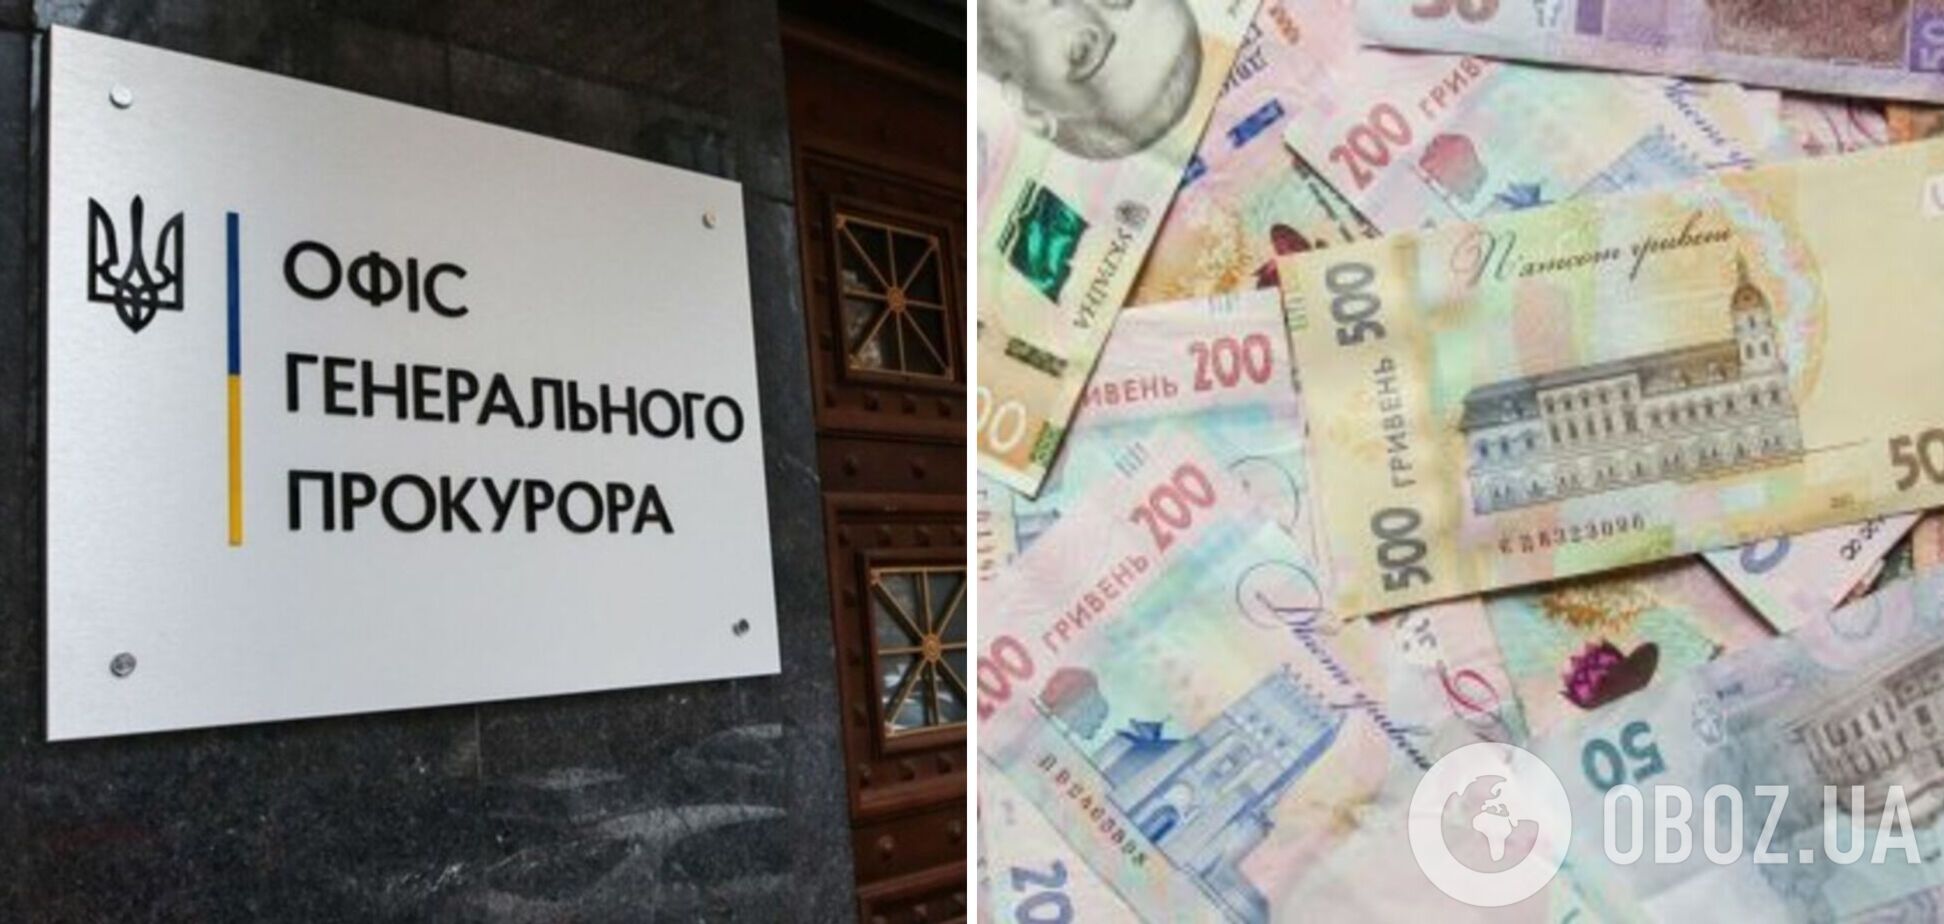 Присвоил 3,8 млн грн вещественных доказательств: в Николаевской области разоблачили экс-прокурора. Фото